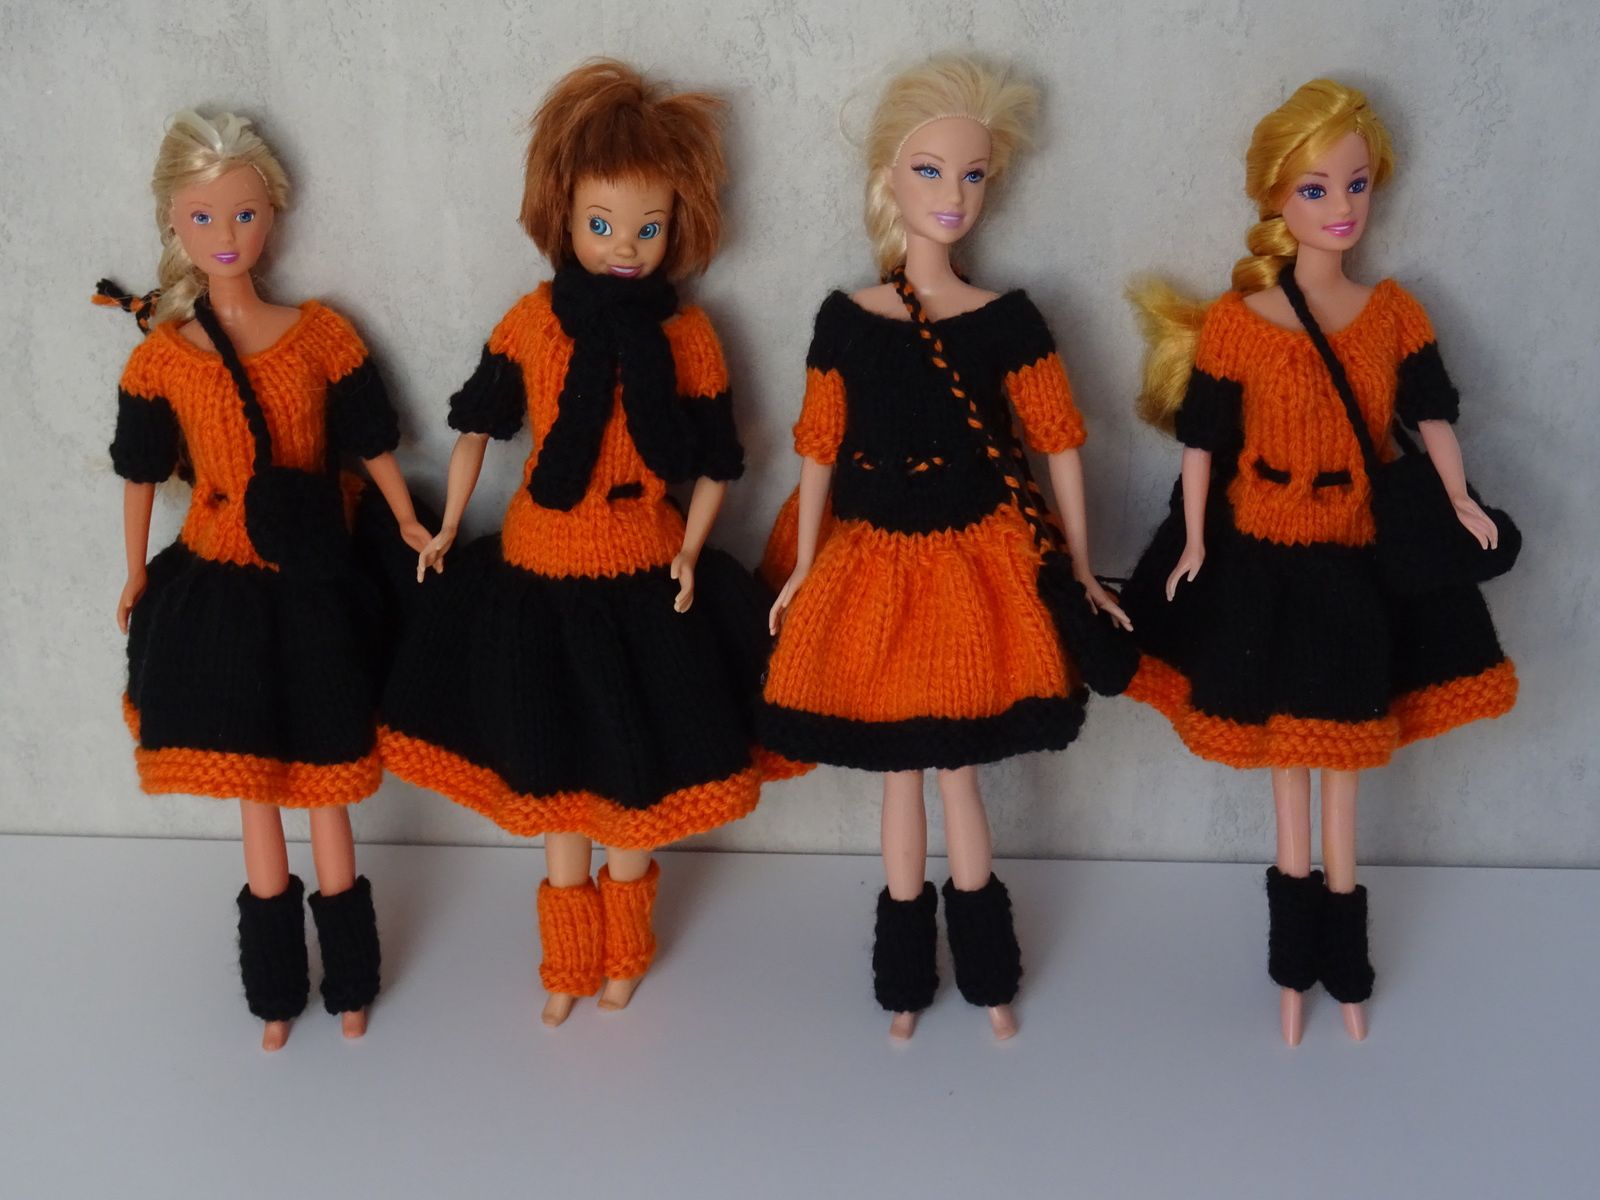 Le modèle de la robe pour la poupée est un modèle de Laramicelle  http://laramicelle2210.overblog.com/tuto-robe-et-gu%C3%AAtres-pour-barbie